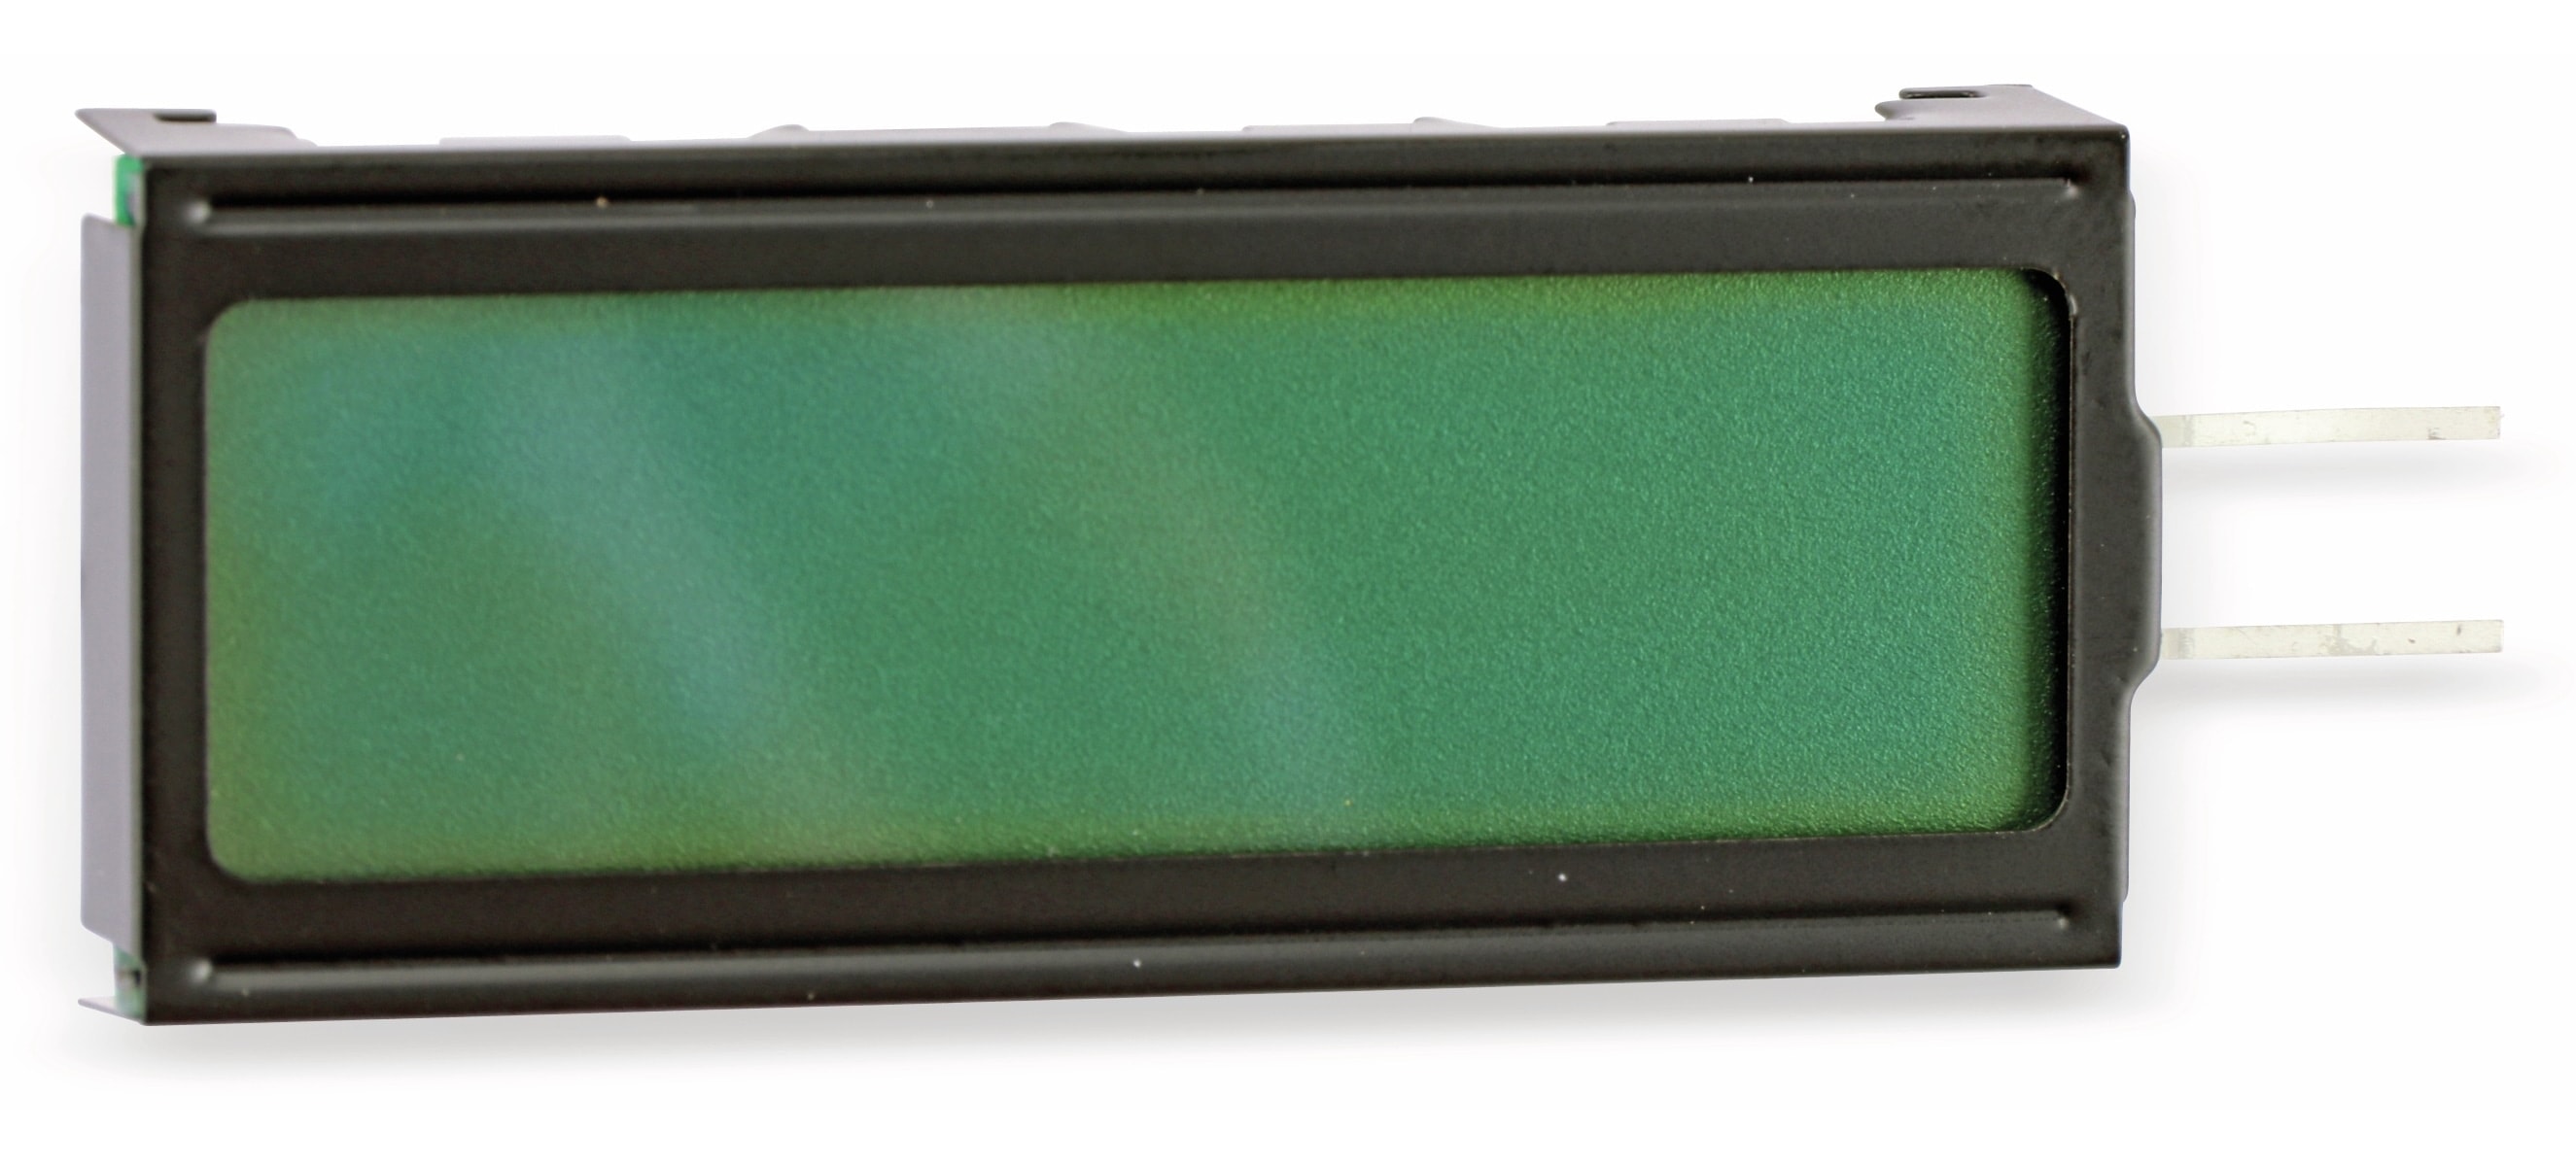 Datavision LCD-Display DG-12232 ohne Anschlussplatine und Leitgummi